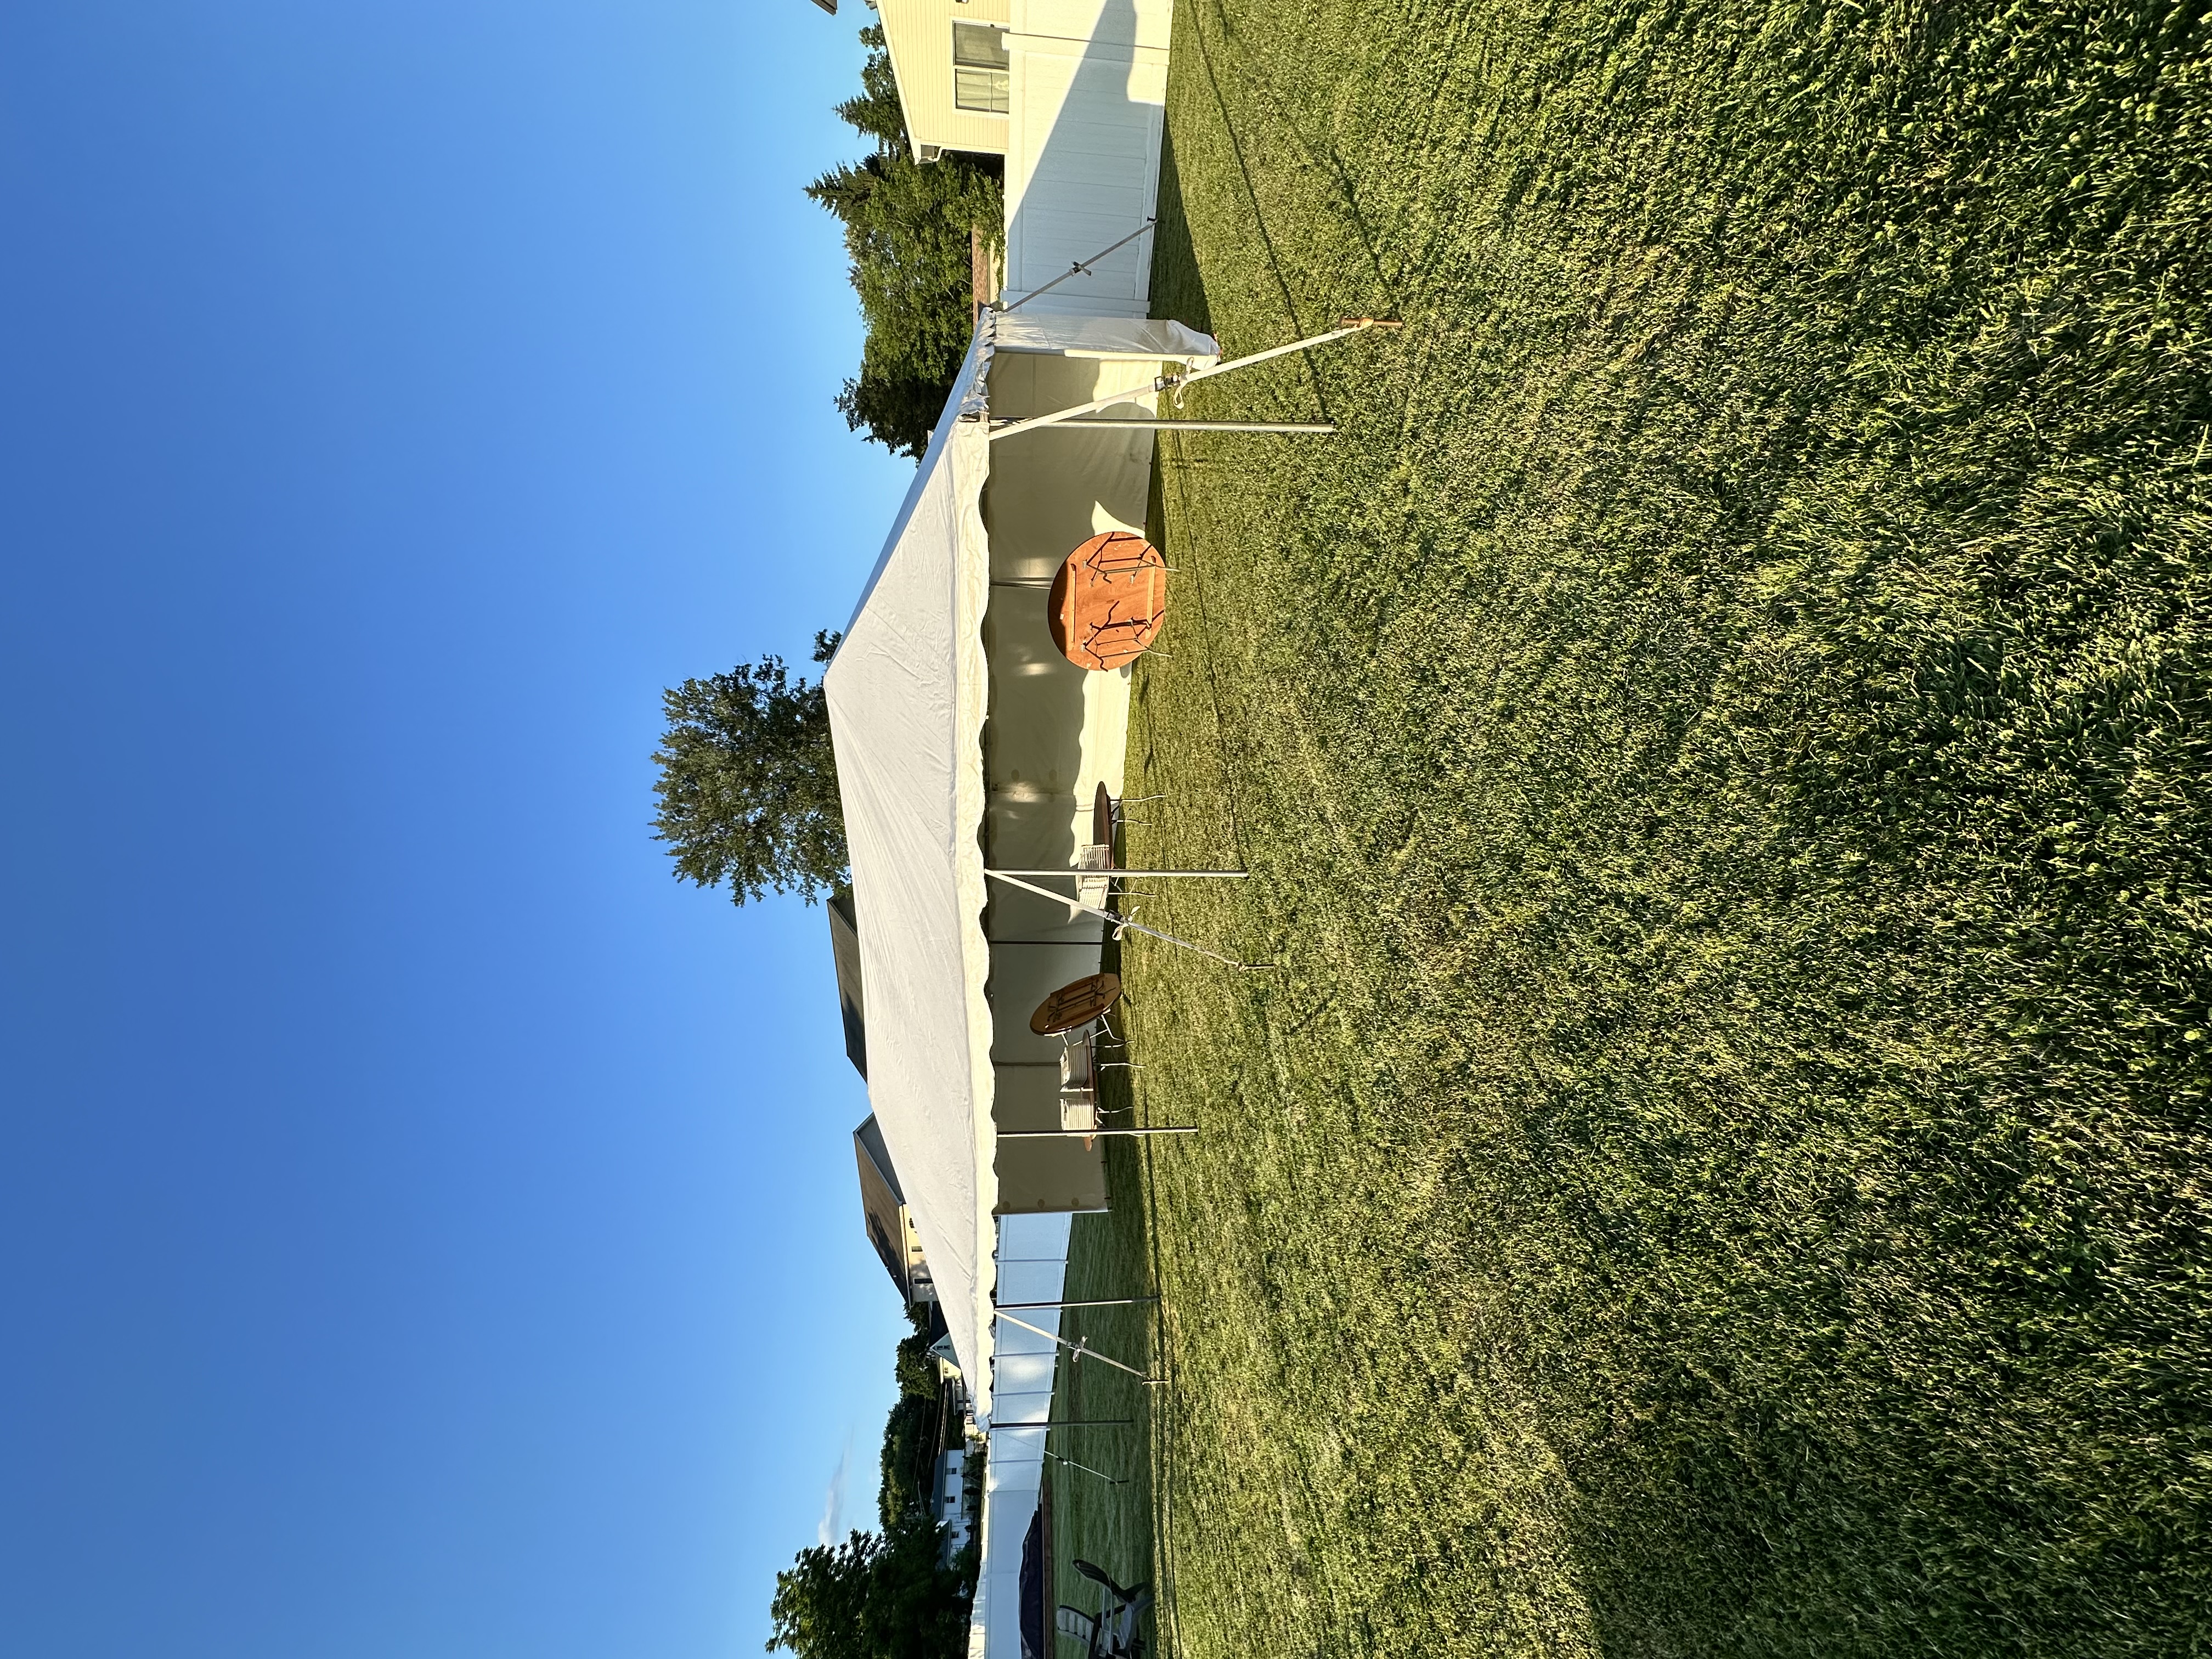 Medium Party Tent in Abingdon, Maryland